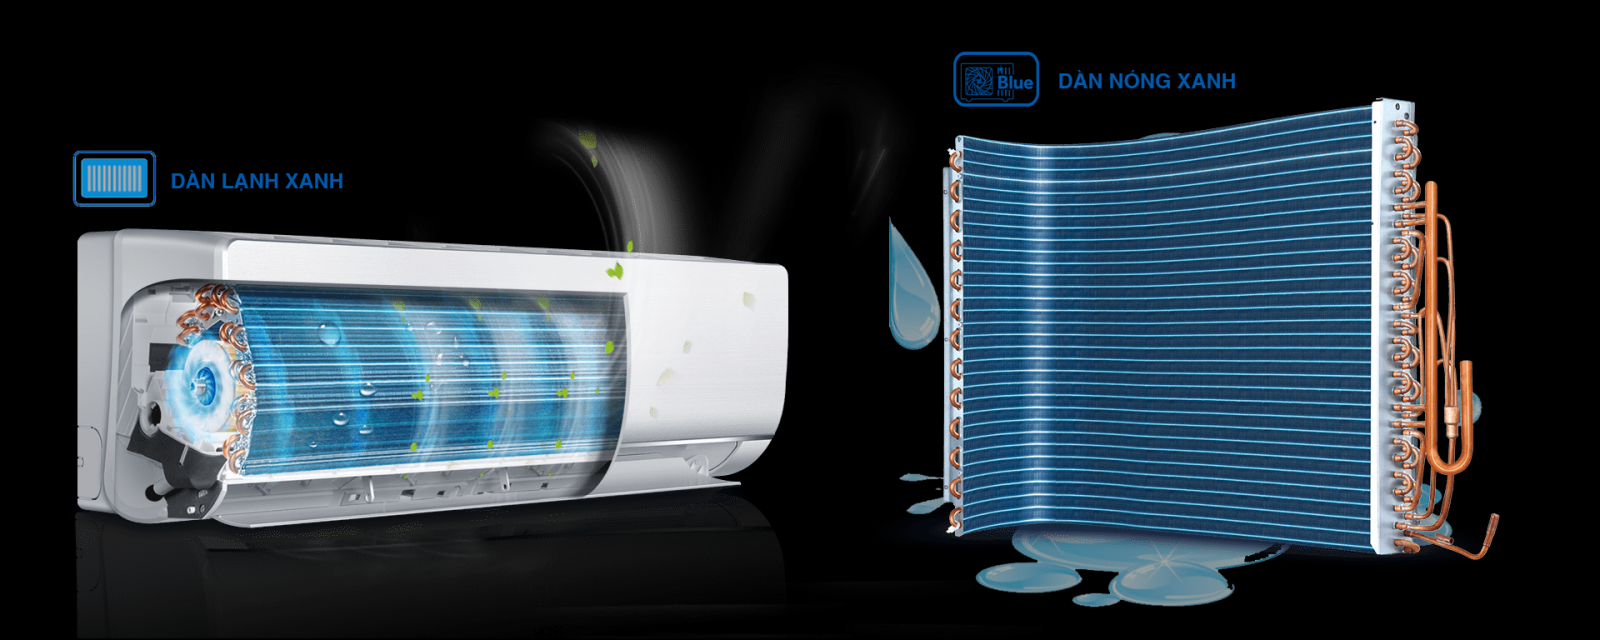 Máy lạnh Aqua Inverter 1 HP AQA-KCRV10TH